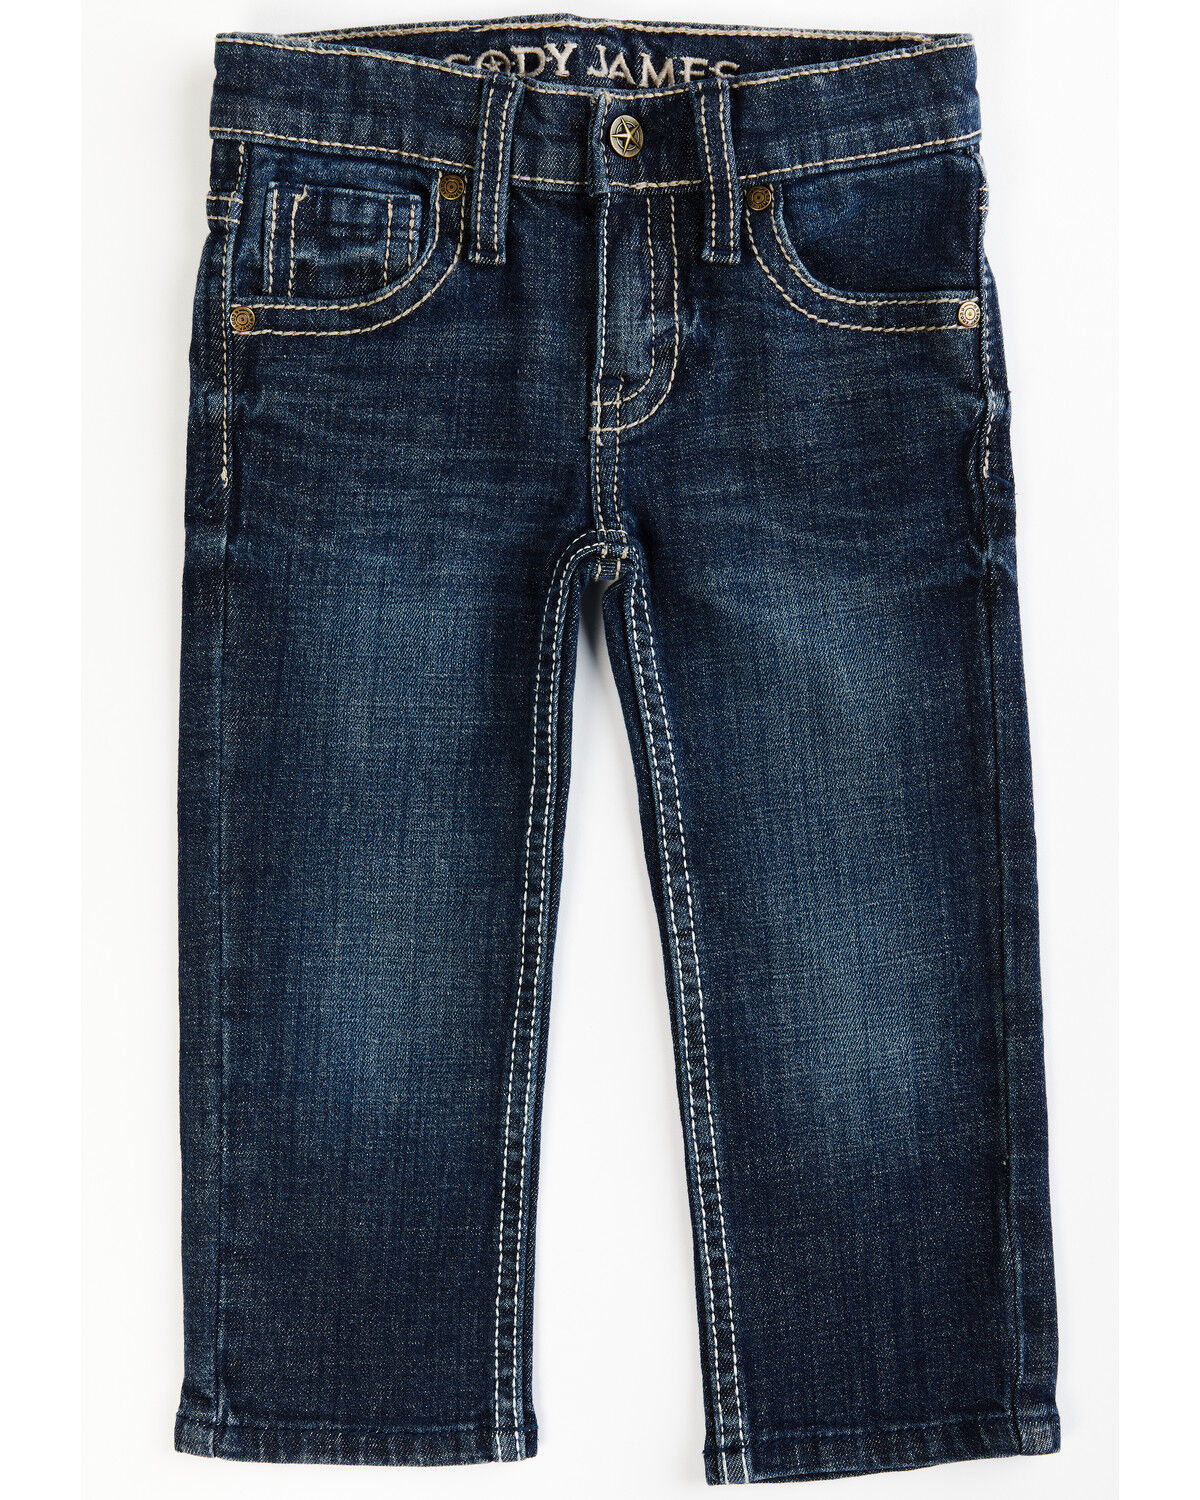 98 104 UVP 15,95 € Knallerpreis Sanetta Boys Schlupf Jeans rundum Gummi blue Gr 